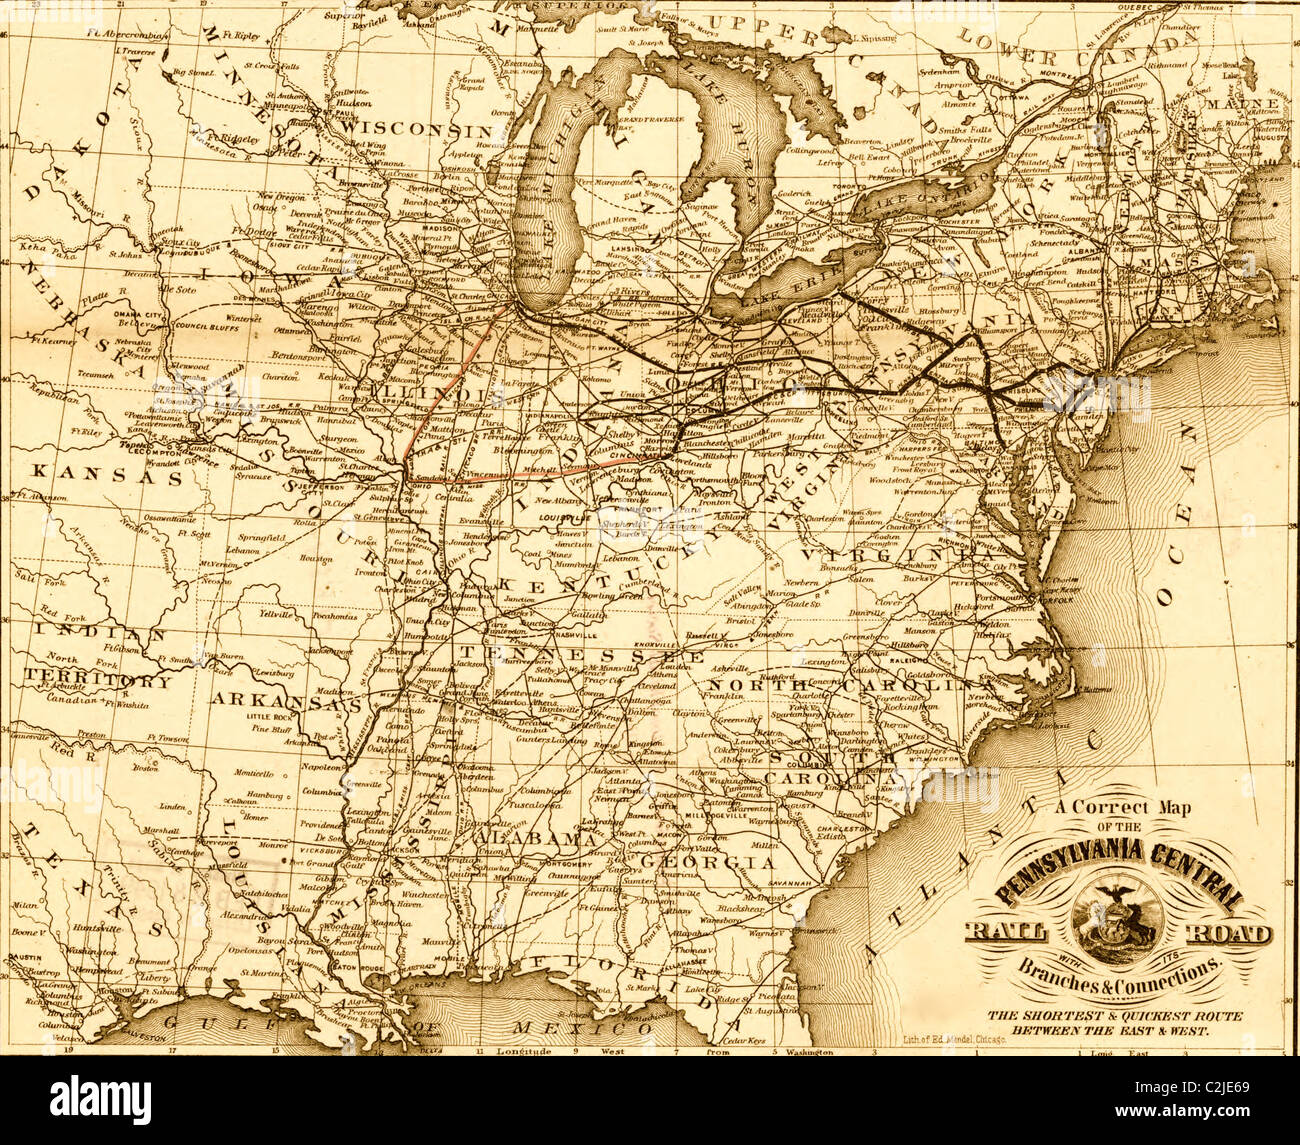 Pennsylvania Central - 1854 Stockfoto